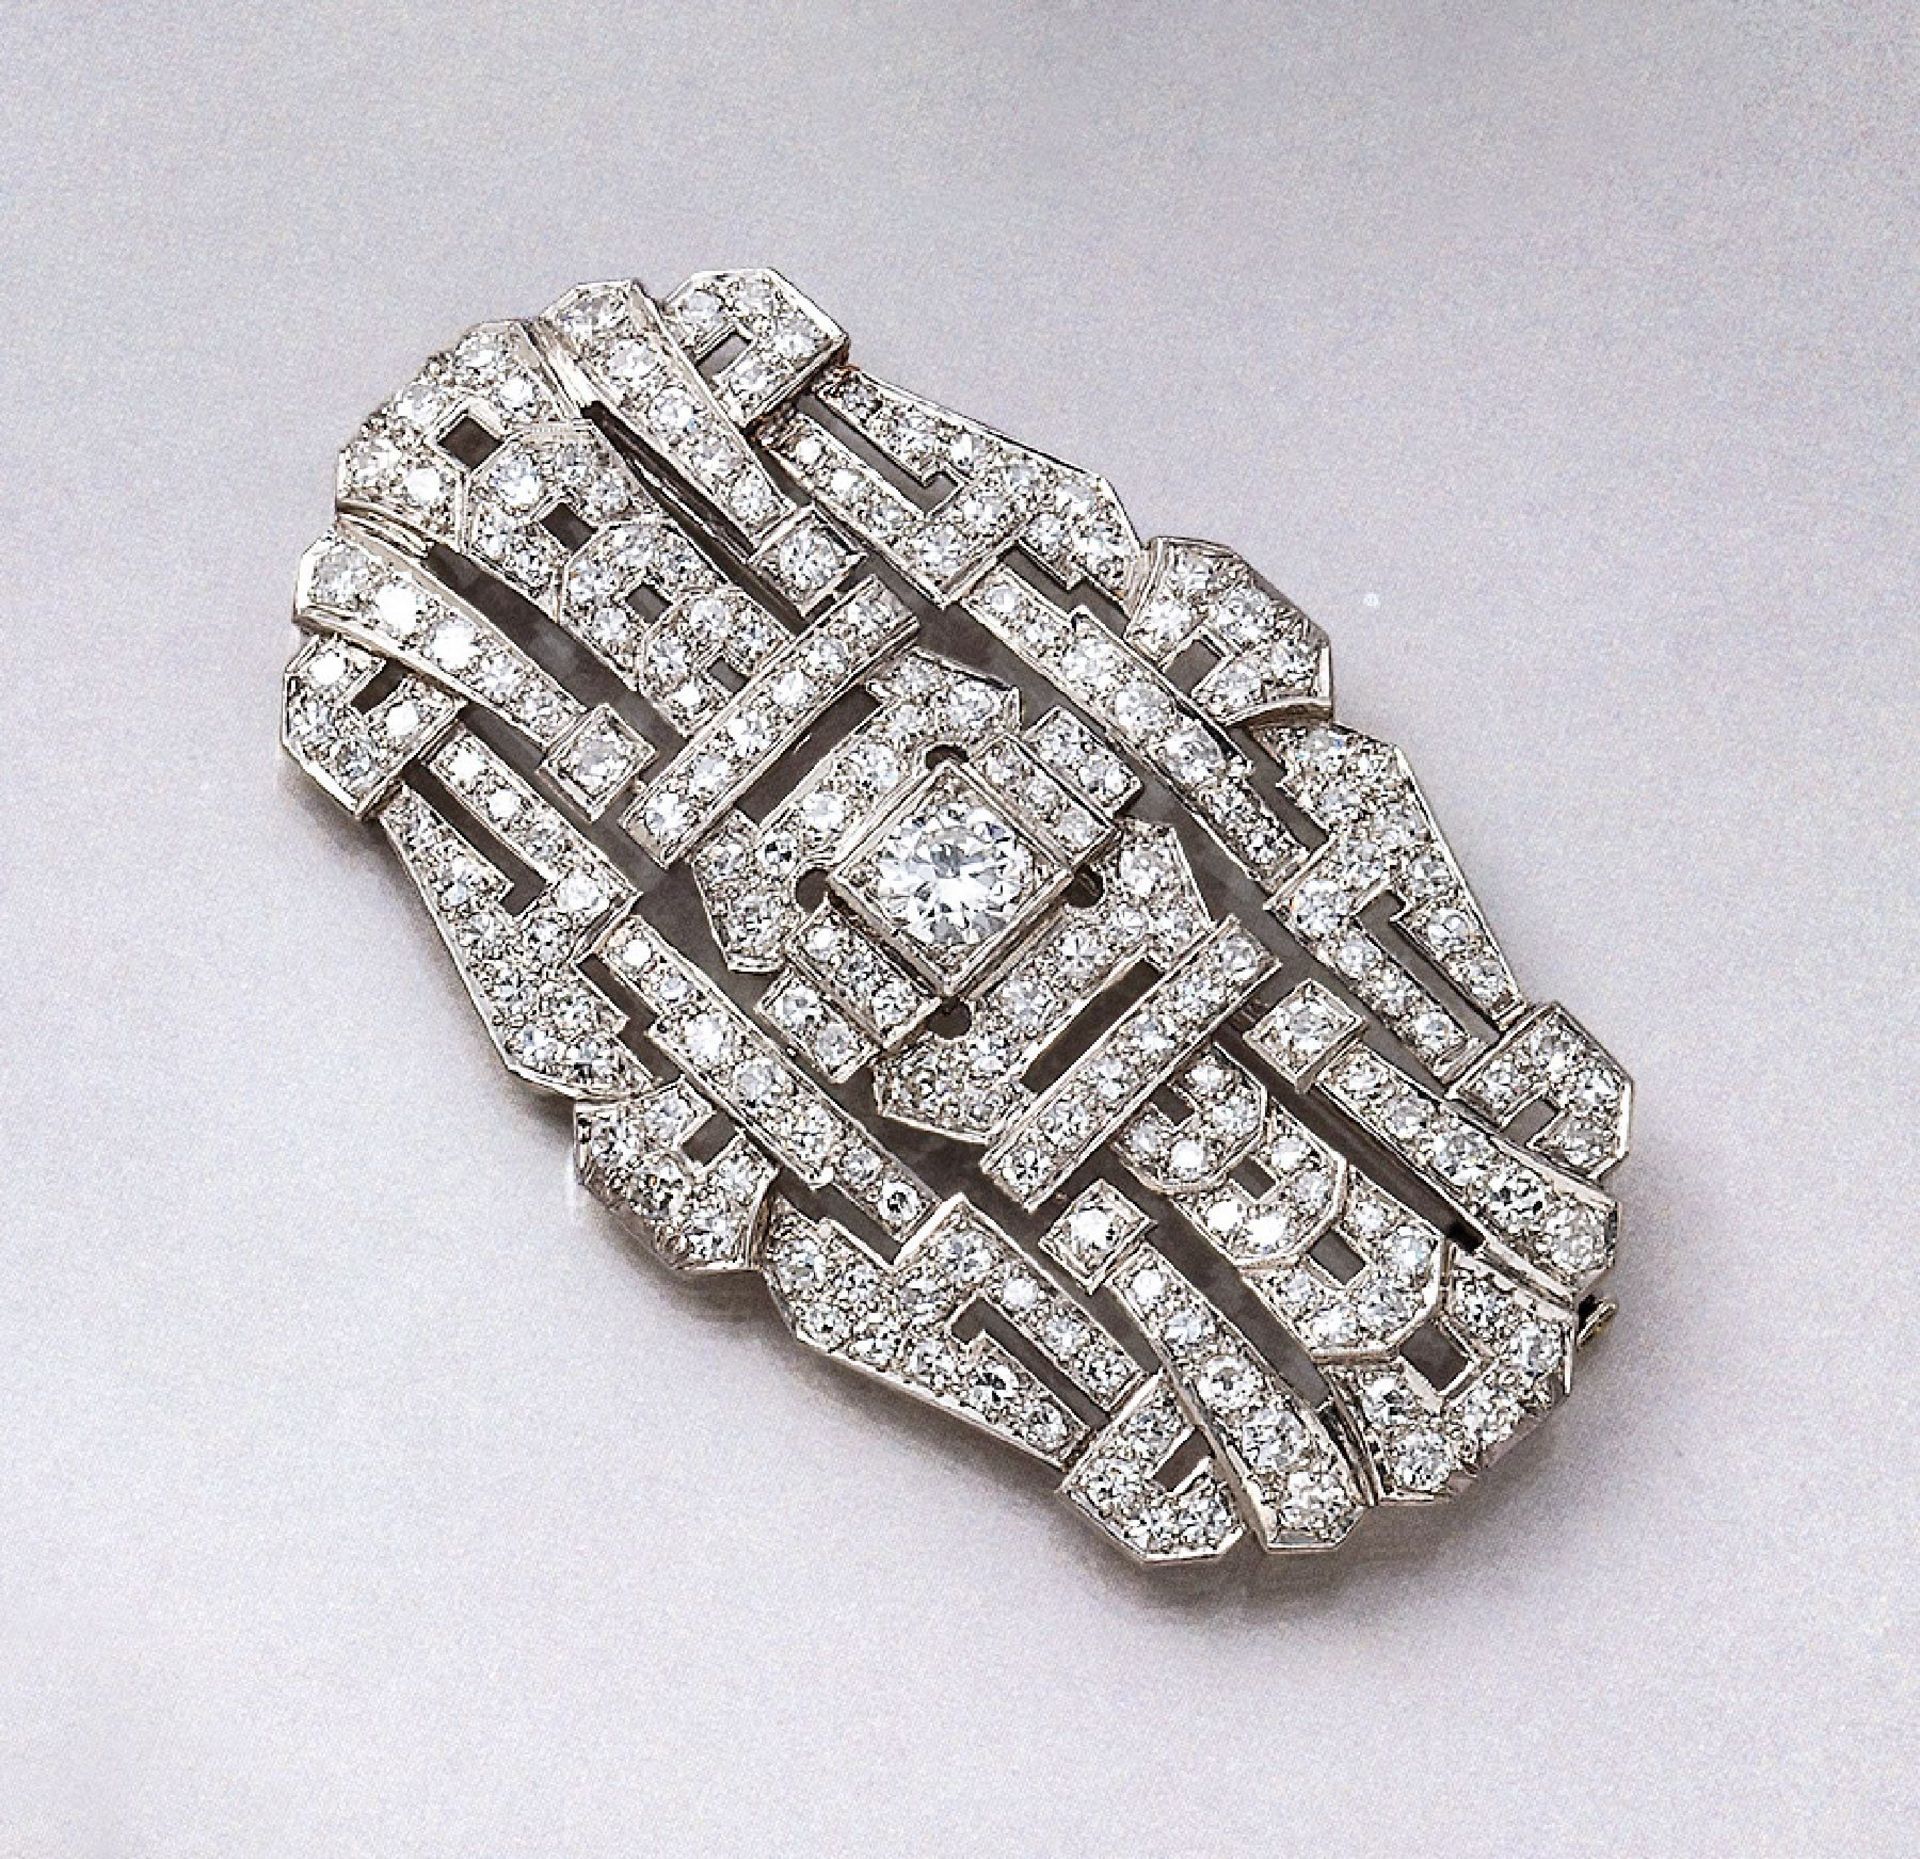 Platin Art-Deco Brosche mit Diamanten, um 1930, Diamanten zus. ca. 7.0 ct Weiß- l.get.Weiß/si-p1,